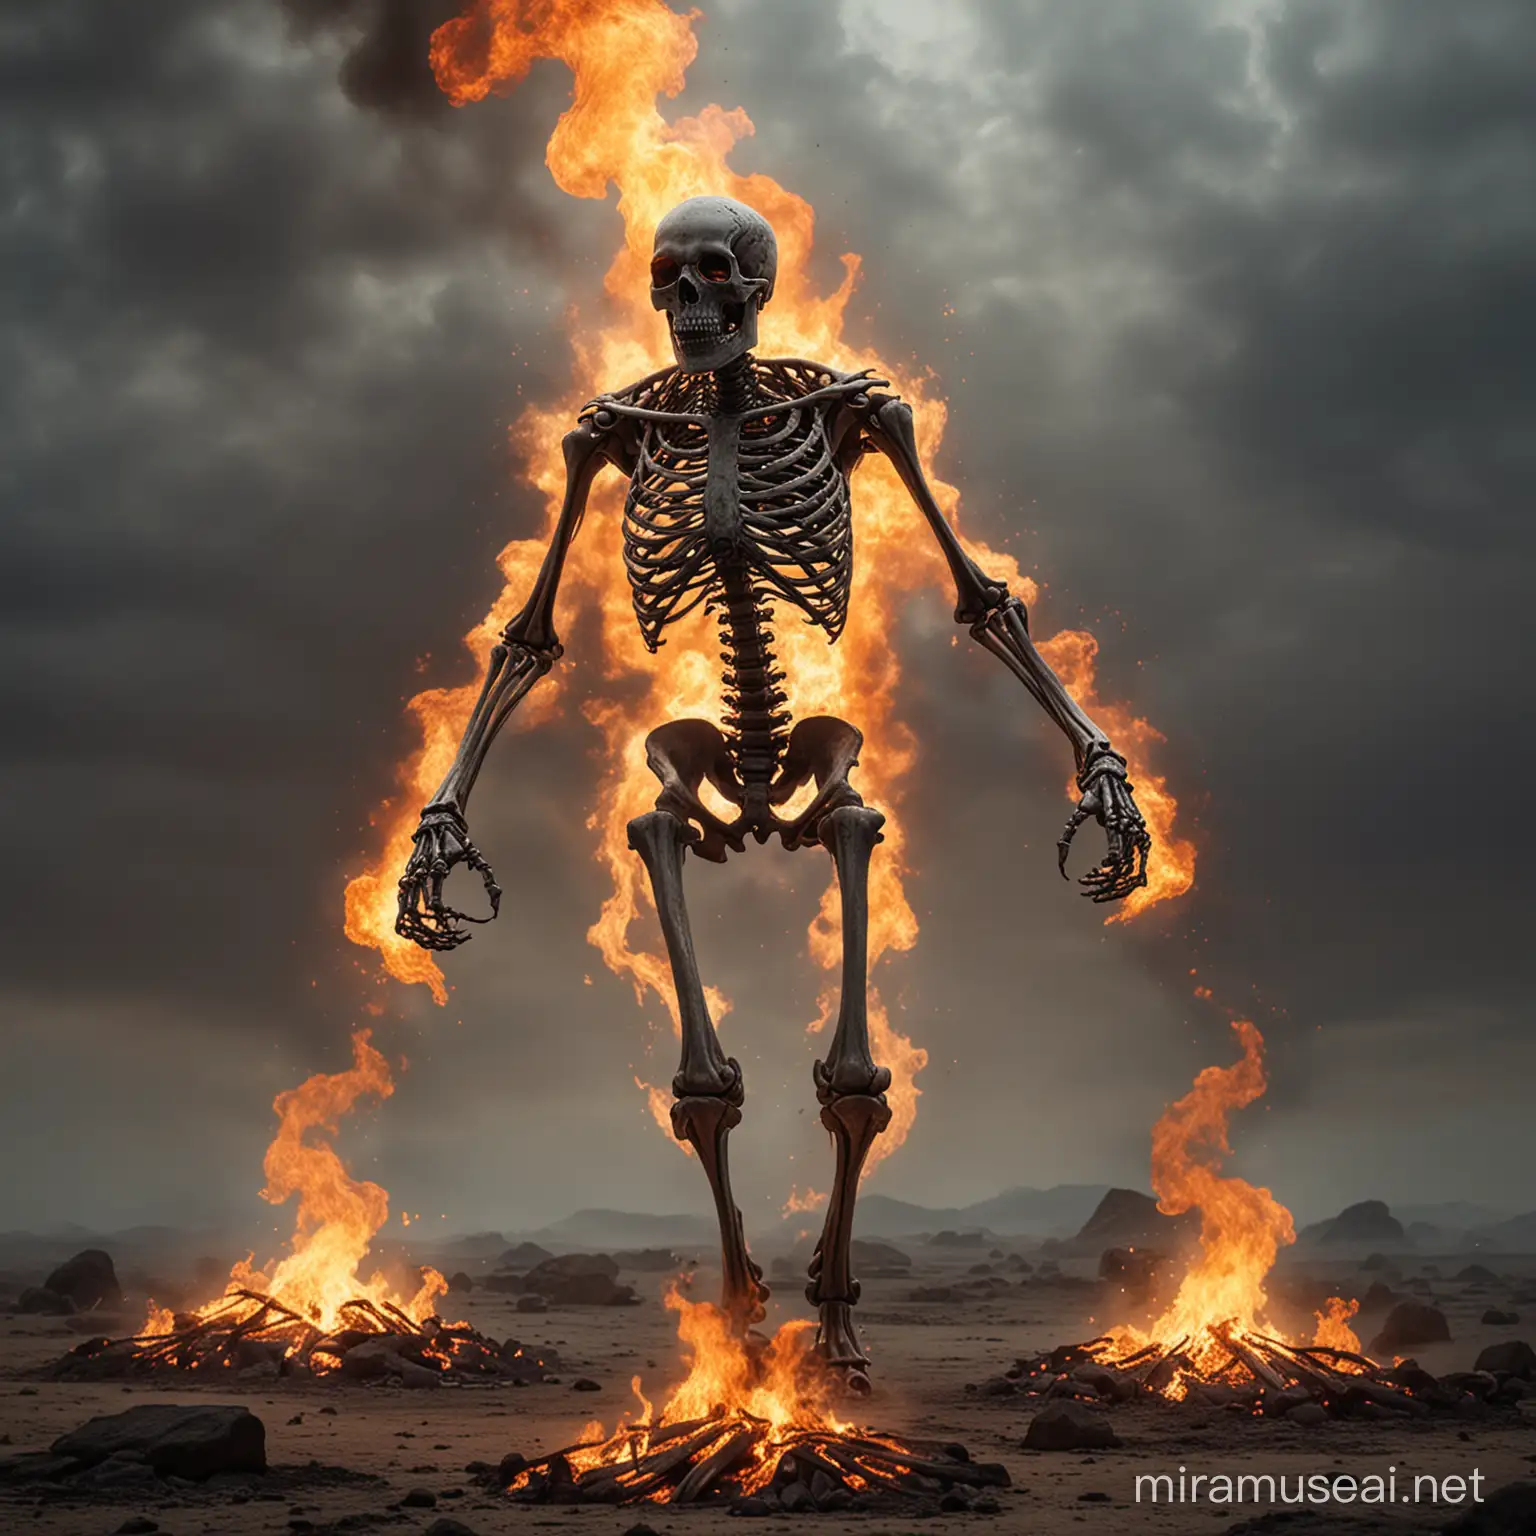 Raging Burning Skeleton in Mystic Fiery Atmosphere